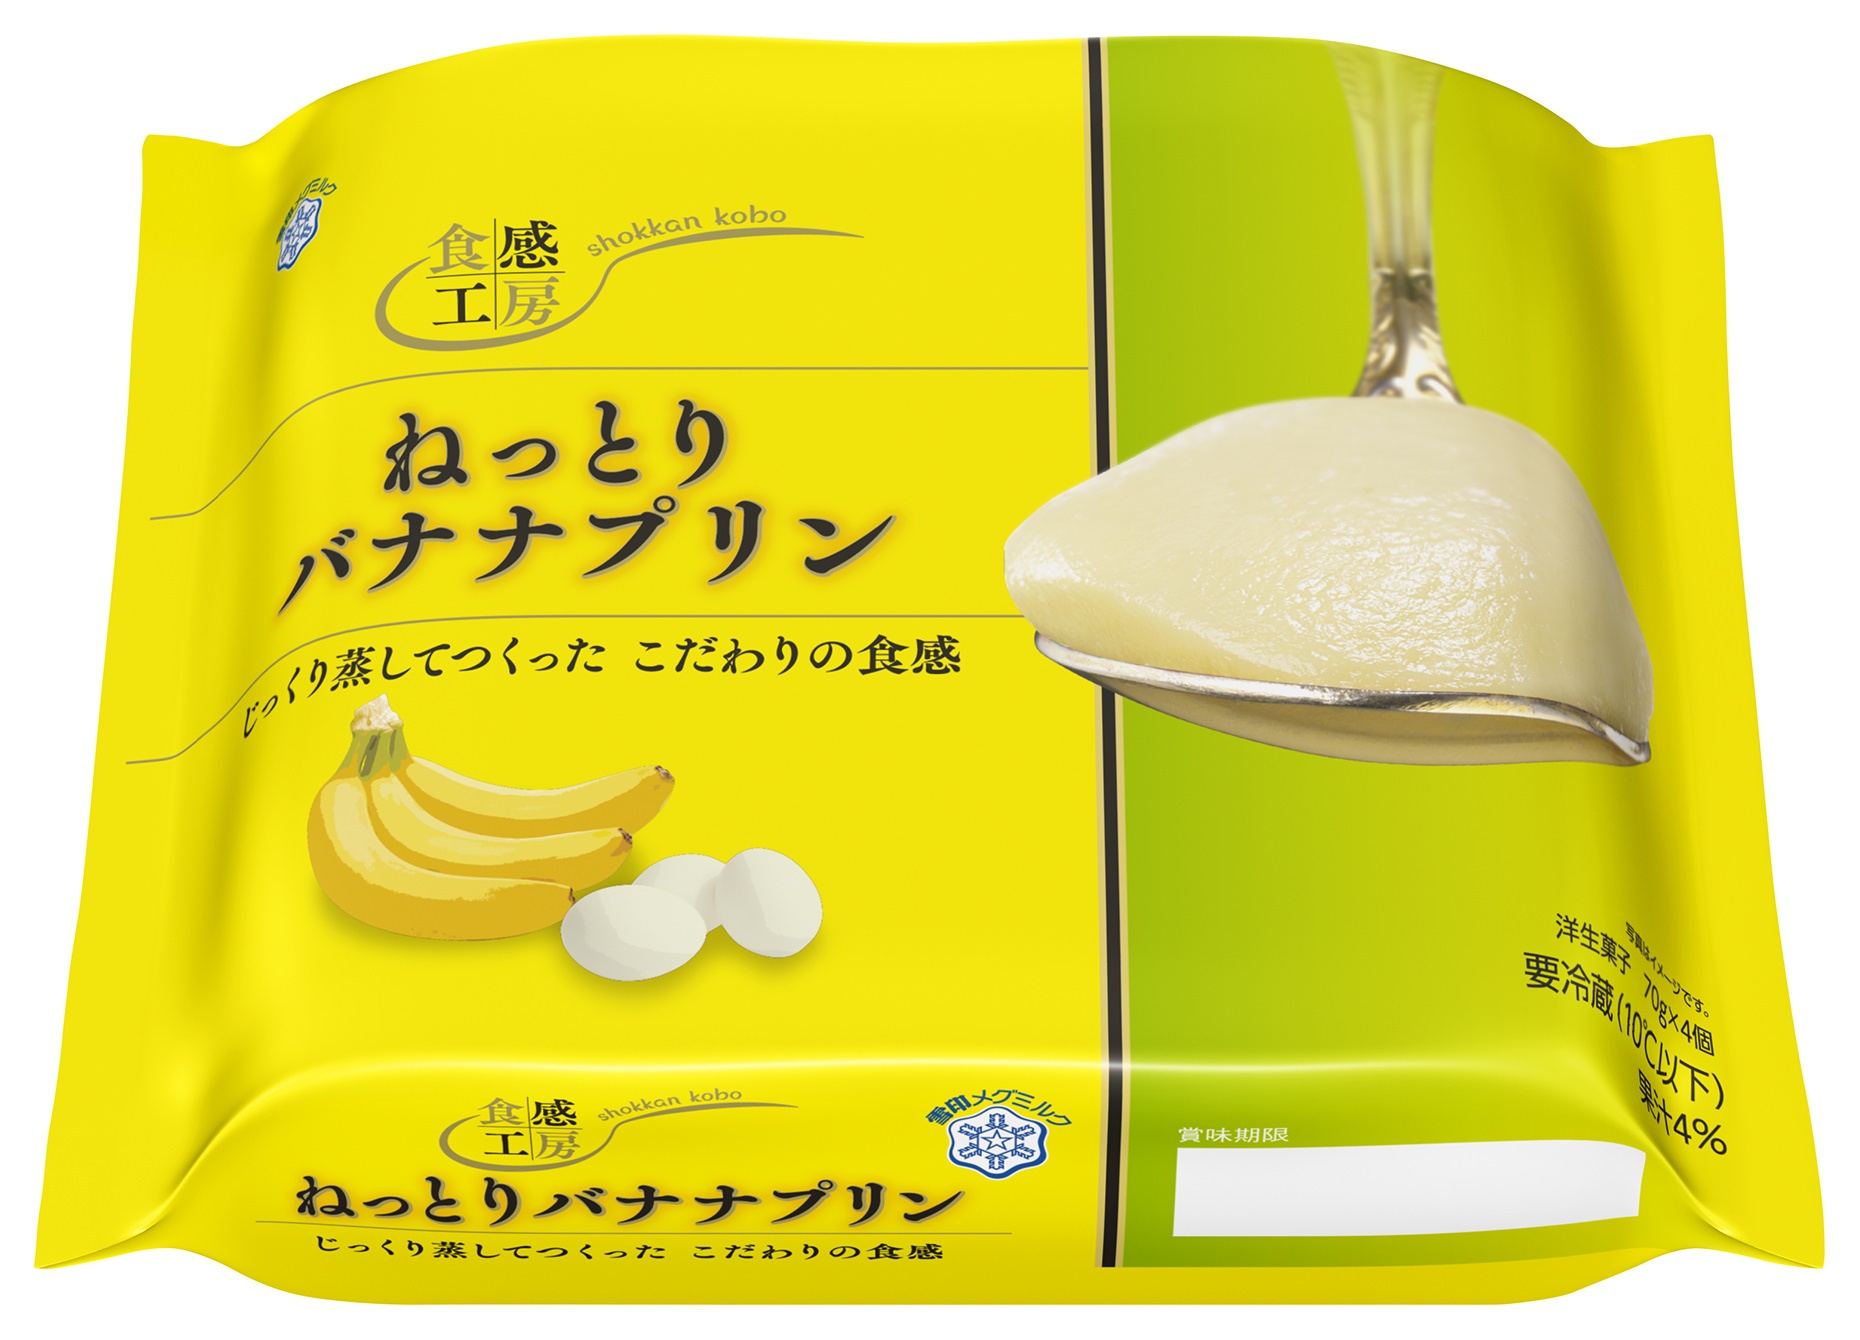 『Dole(R) Charge Fruit Lemon Mix 100％』
2020年3月24日（火）より全国にて新発売